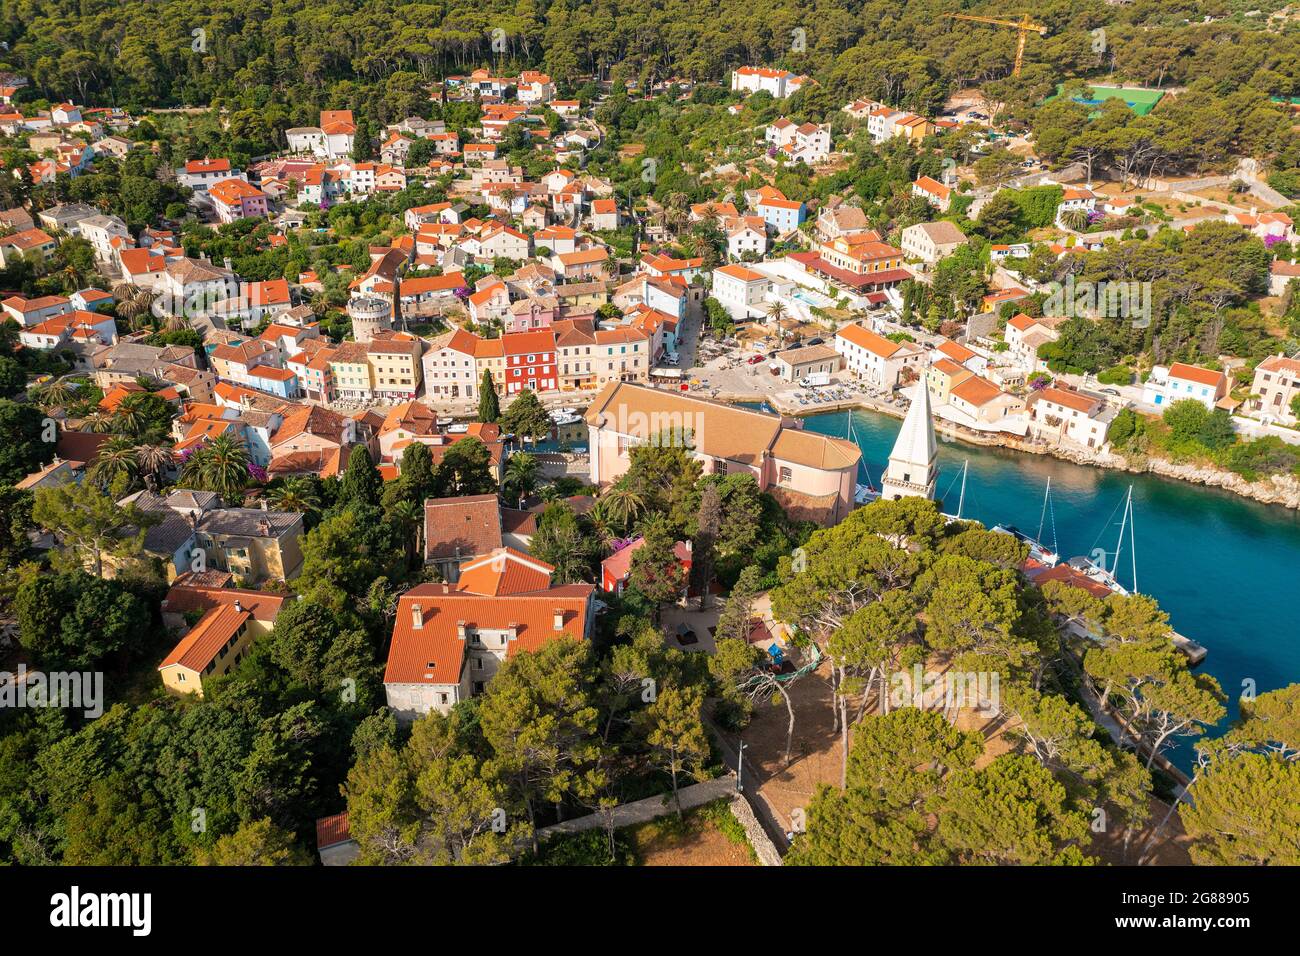 Aerial view of Veli Losinj town in Losinj Island, the Adriatic Sea in Croatia Stock Photo